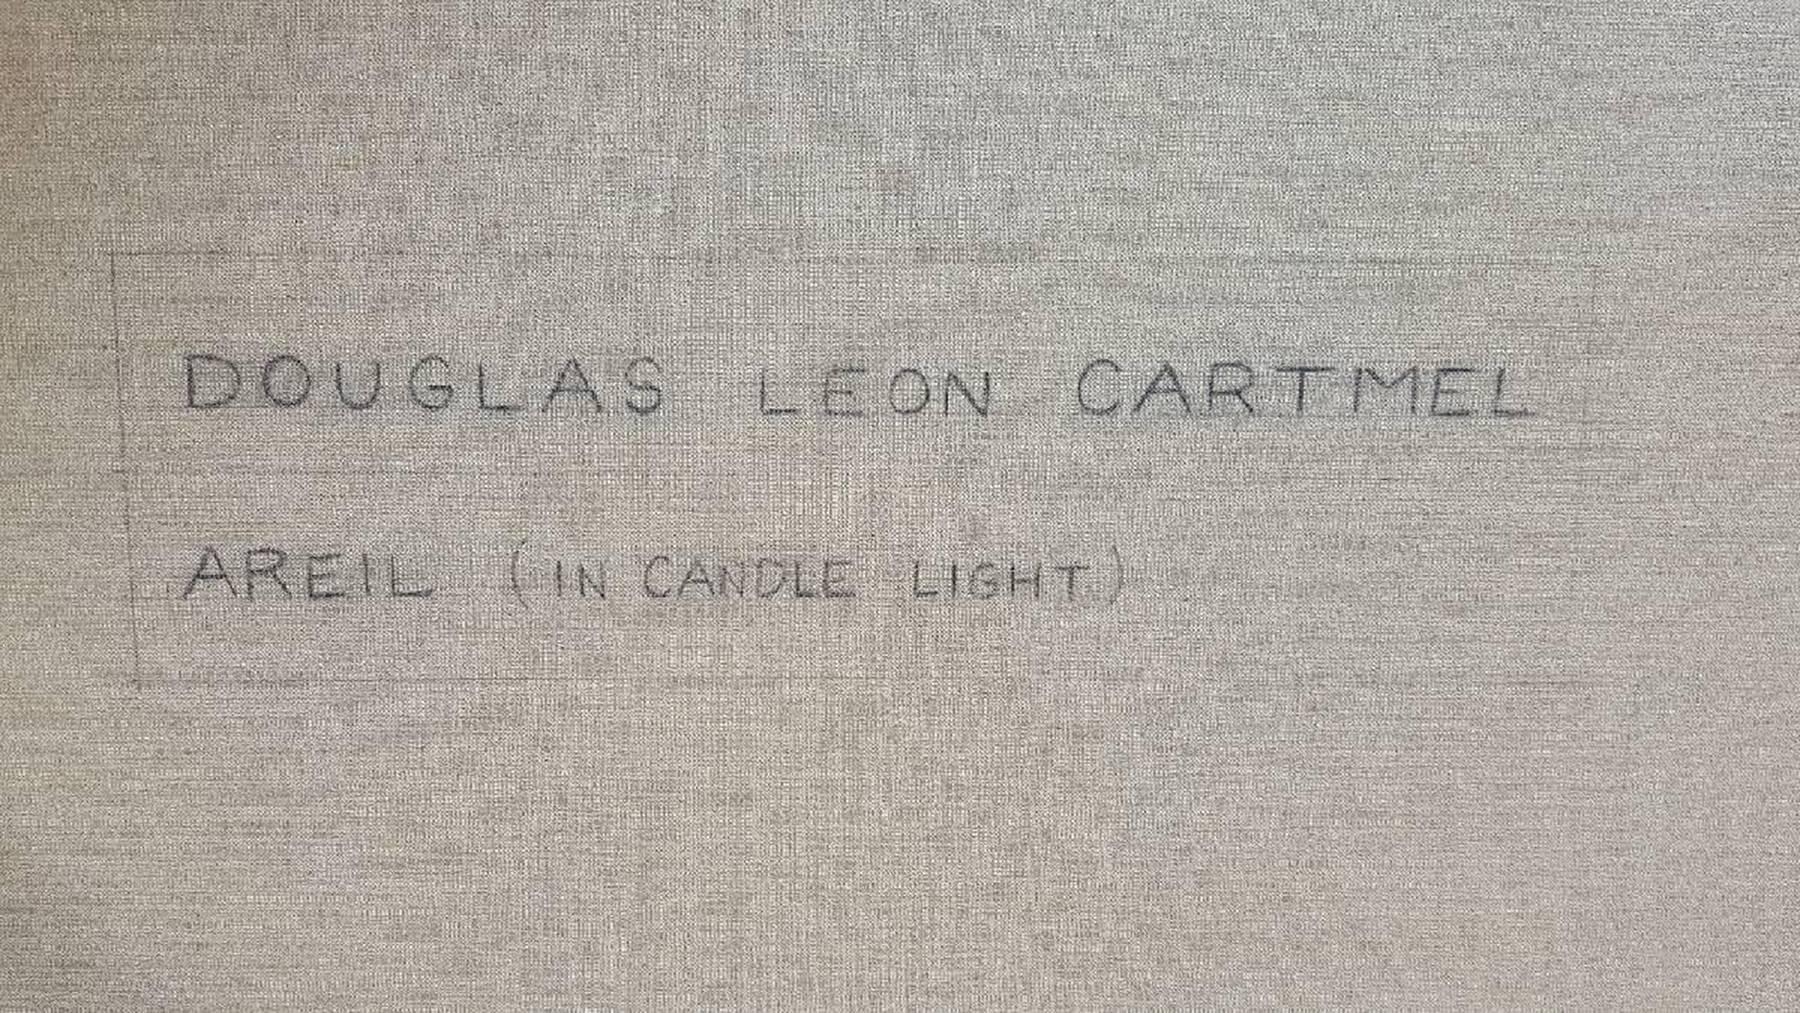 Peinture à l'huile contemporaine « Areil in Candle Light » de Douglas Leon Cartmel sur lin en vente 3